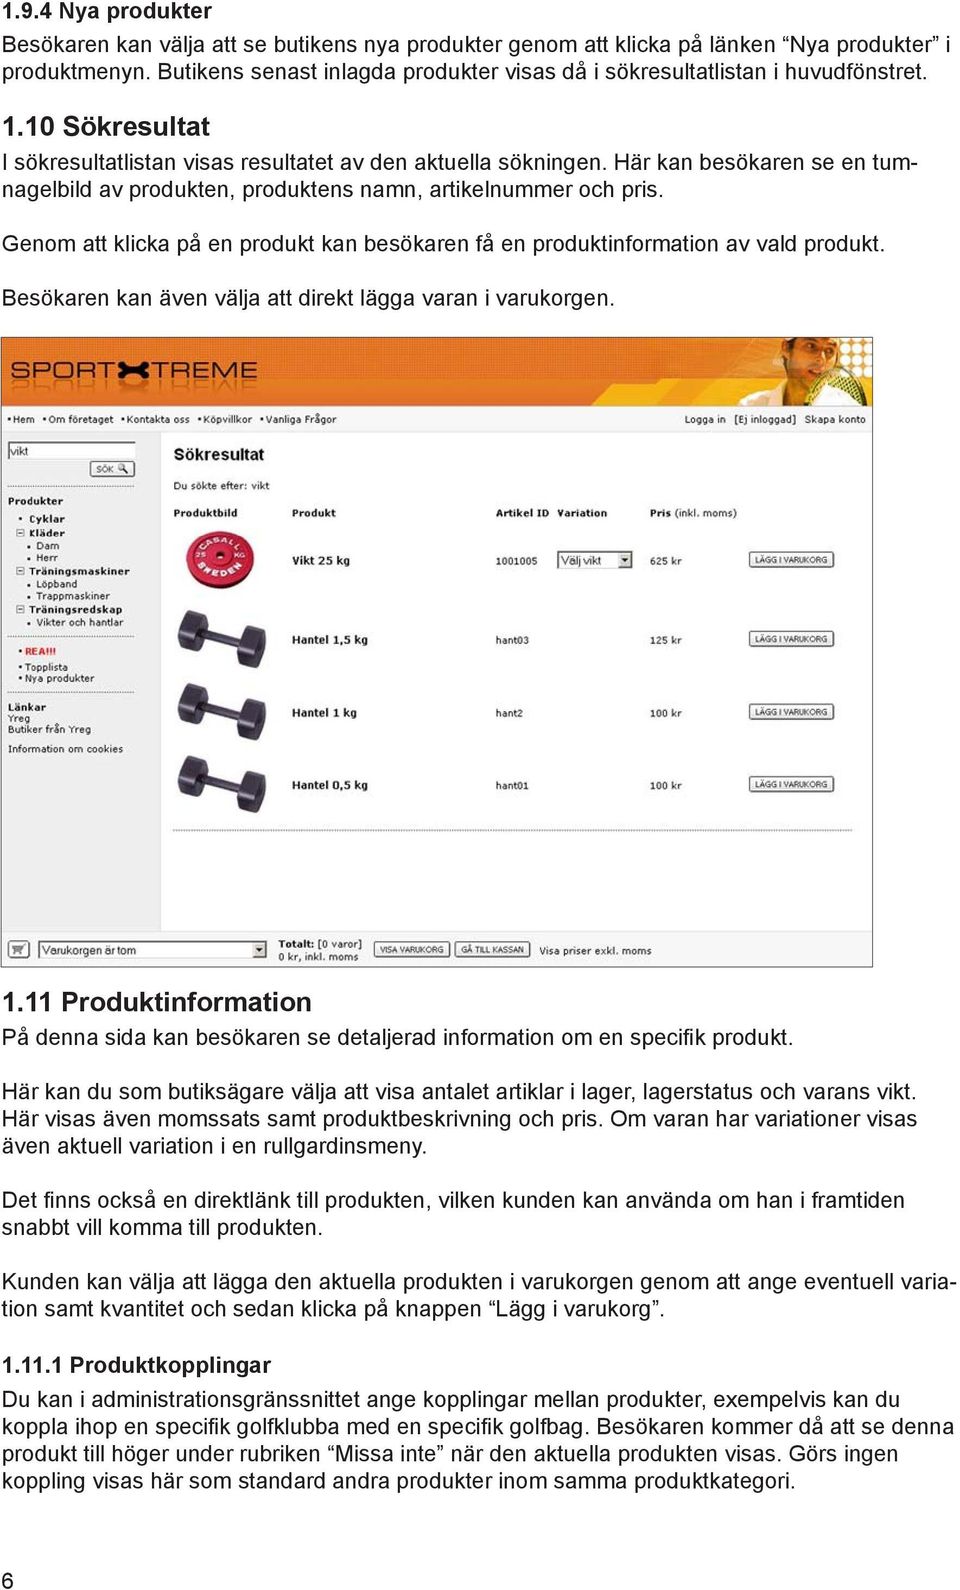 Här kan besökaren se en tumnagelbild av produkten, produktens namn, artikelnummer och pris. Genom att klicka på en produkt kan besökaren få en produktinformation av vald produkt.